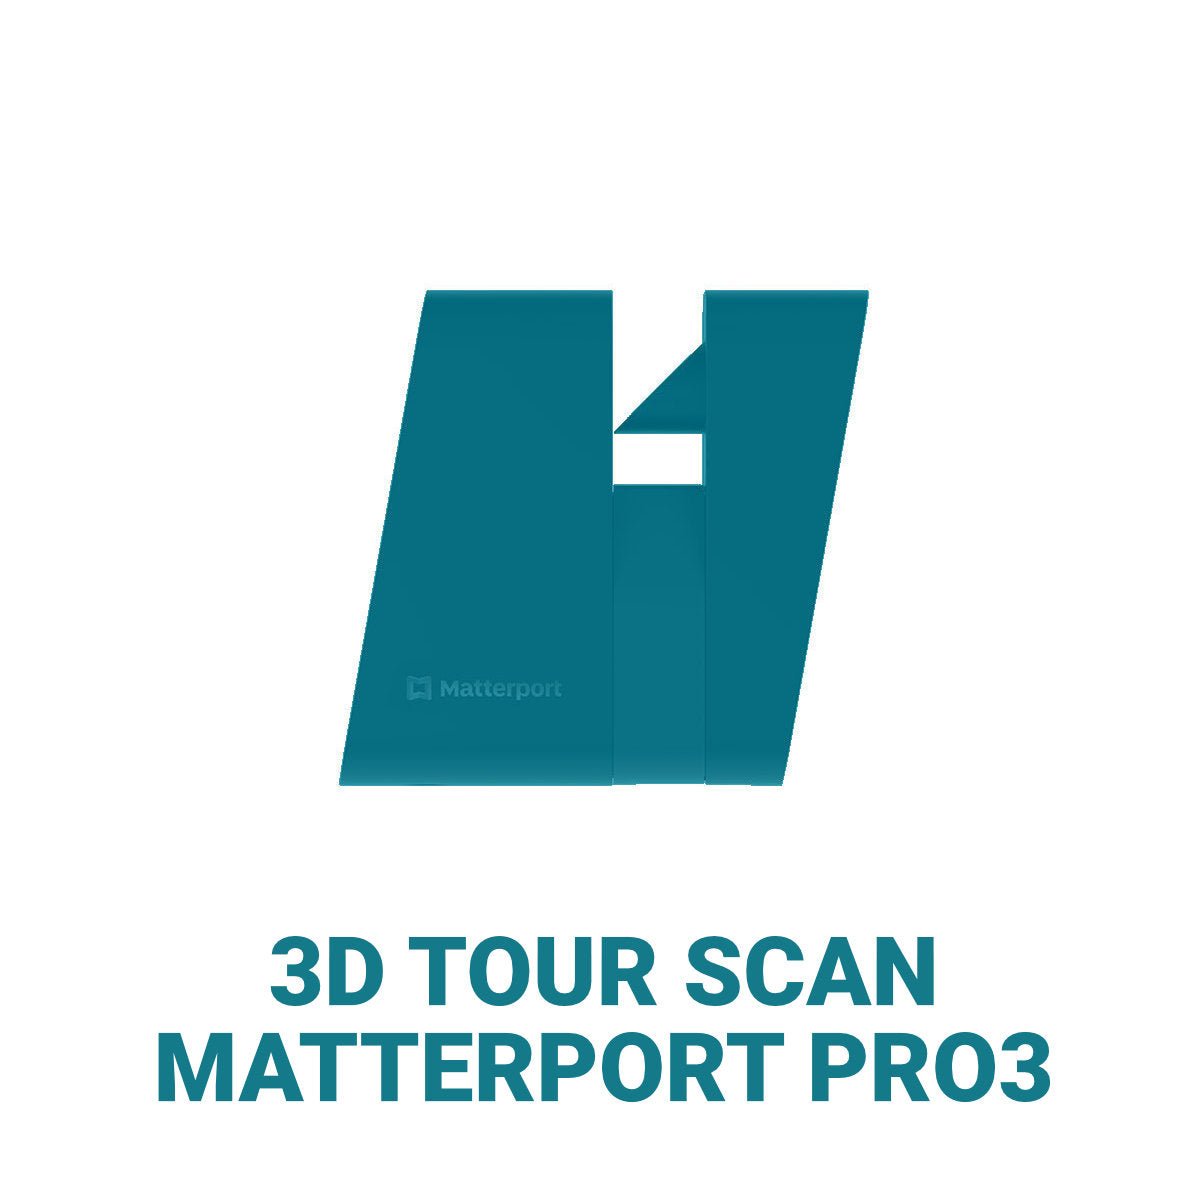 PREISBEISPIEL | MATTERPORT 3D TOUR SCAN PRO QM | LAYOUT 